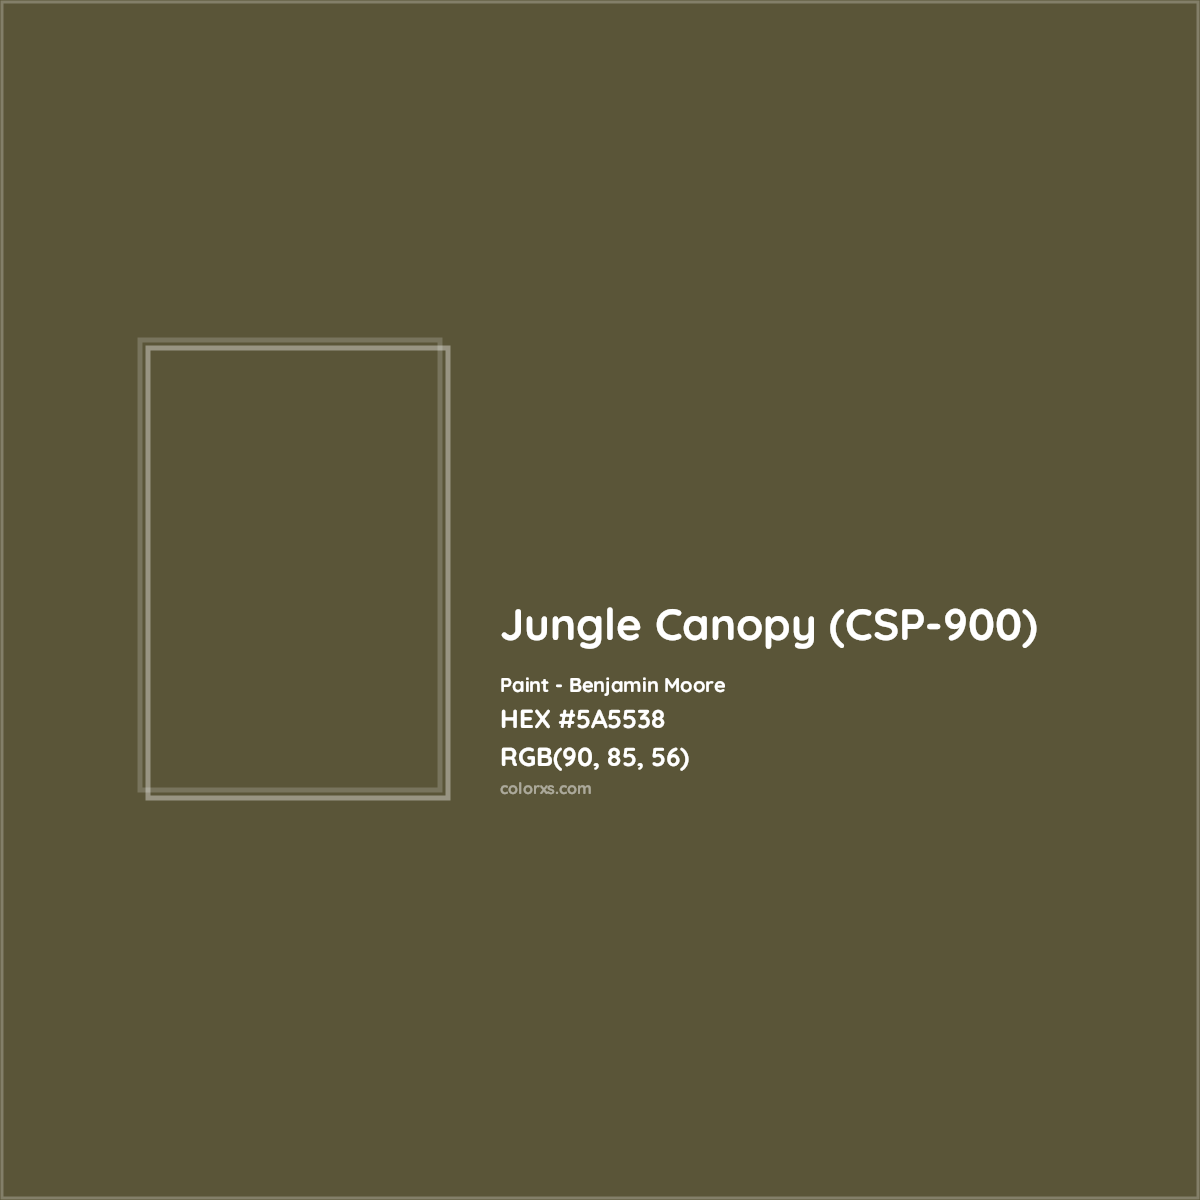 HEX #5A5538 Jungle Canopy (CSP-900) Paint Benjamin Moore - Color Code